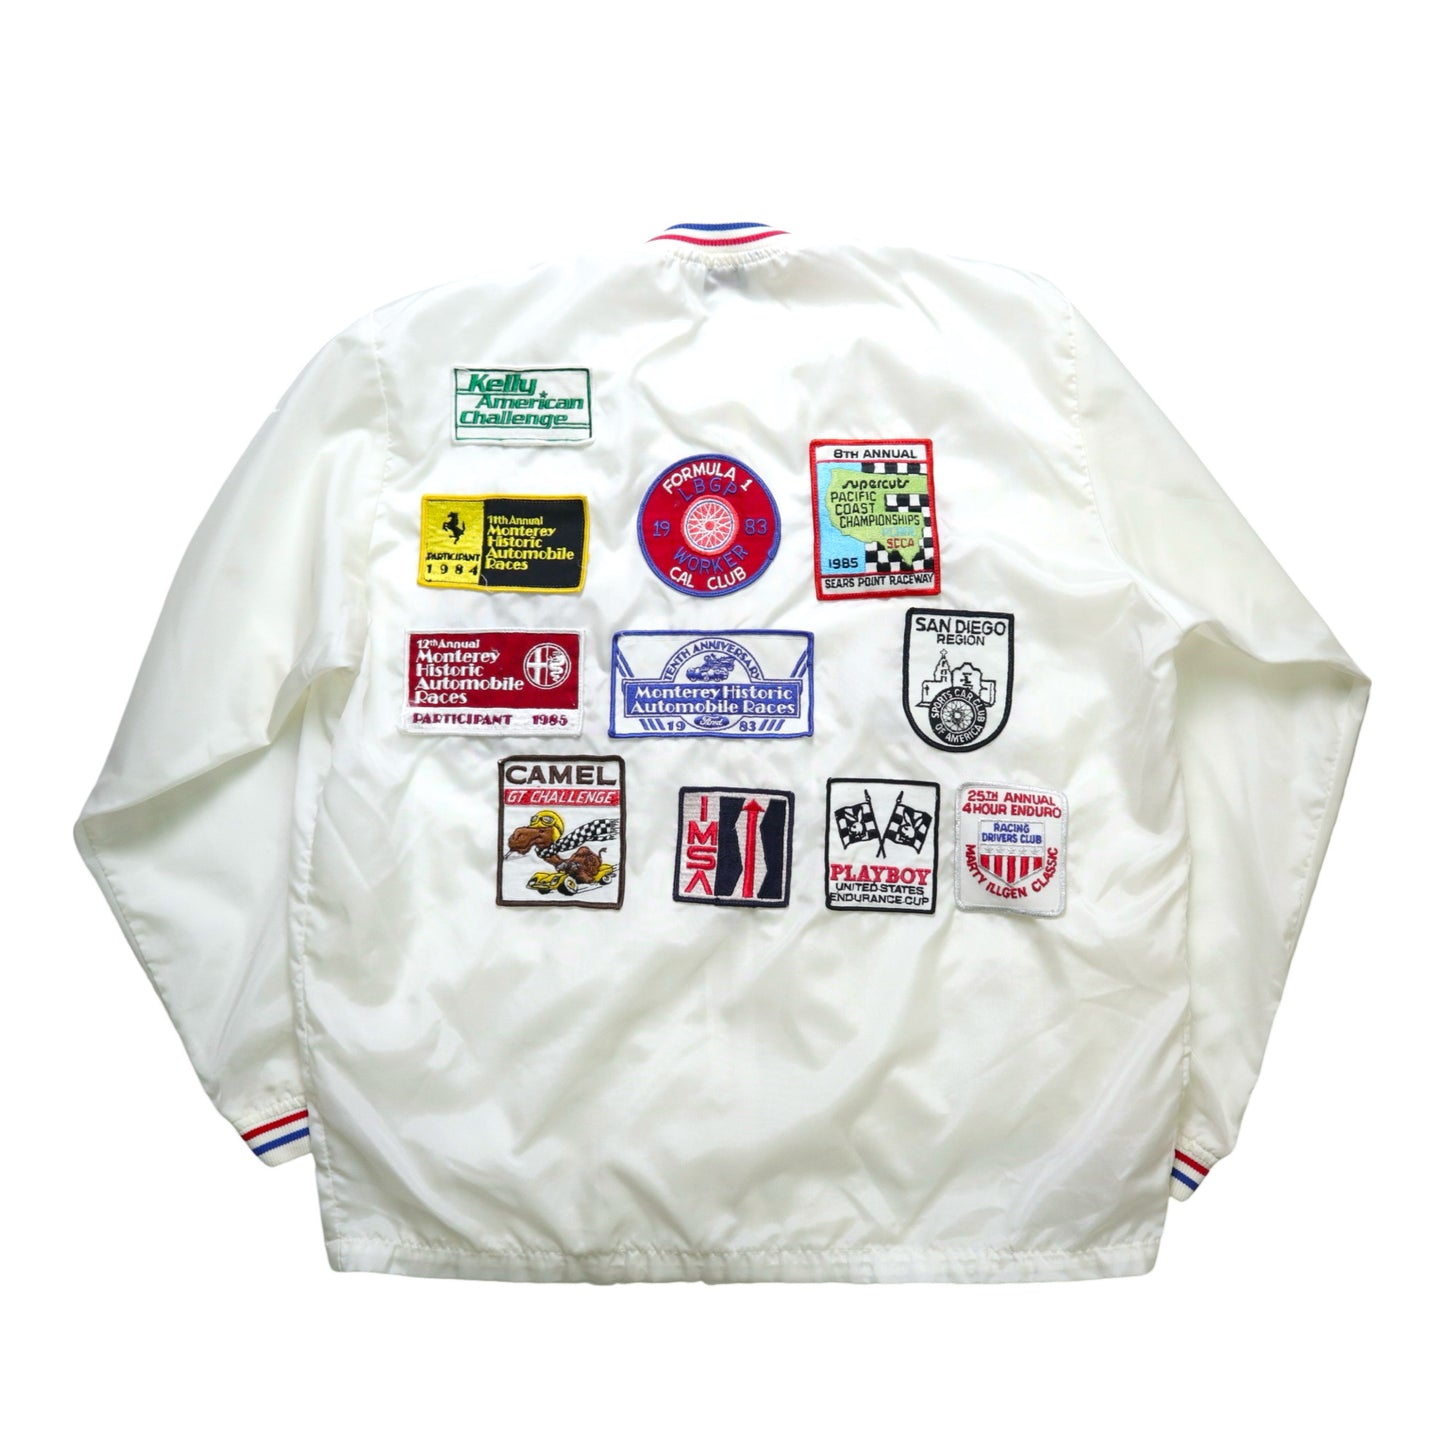 80s 美國製 白色賽車布章防風外套 Talon拉鍊